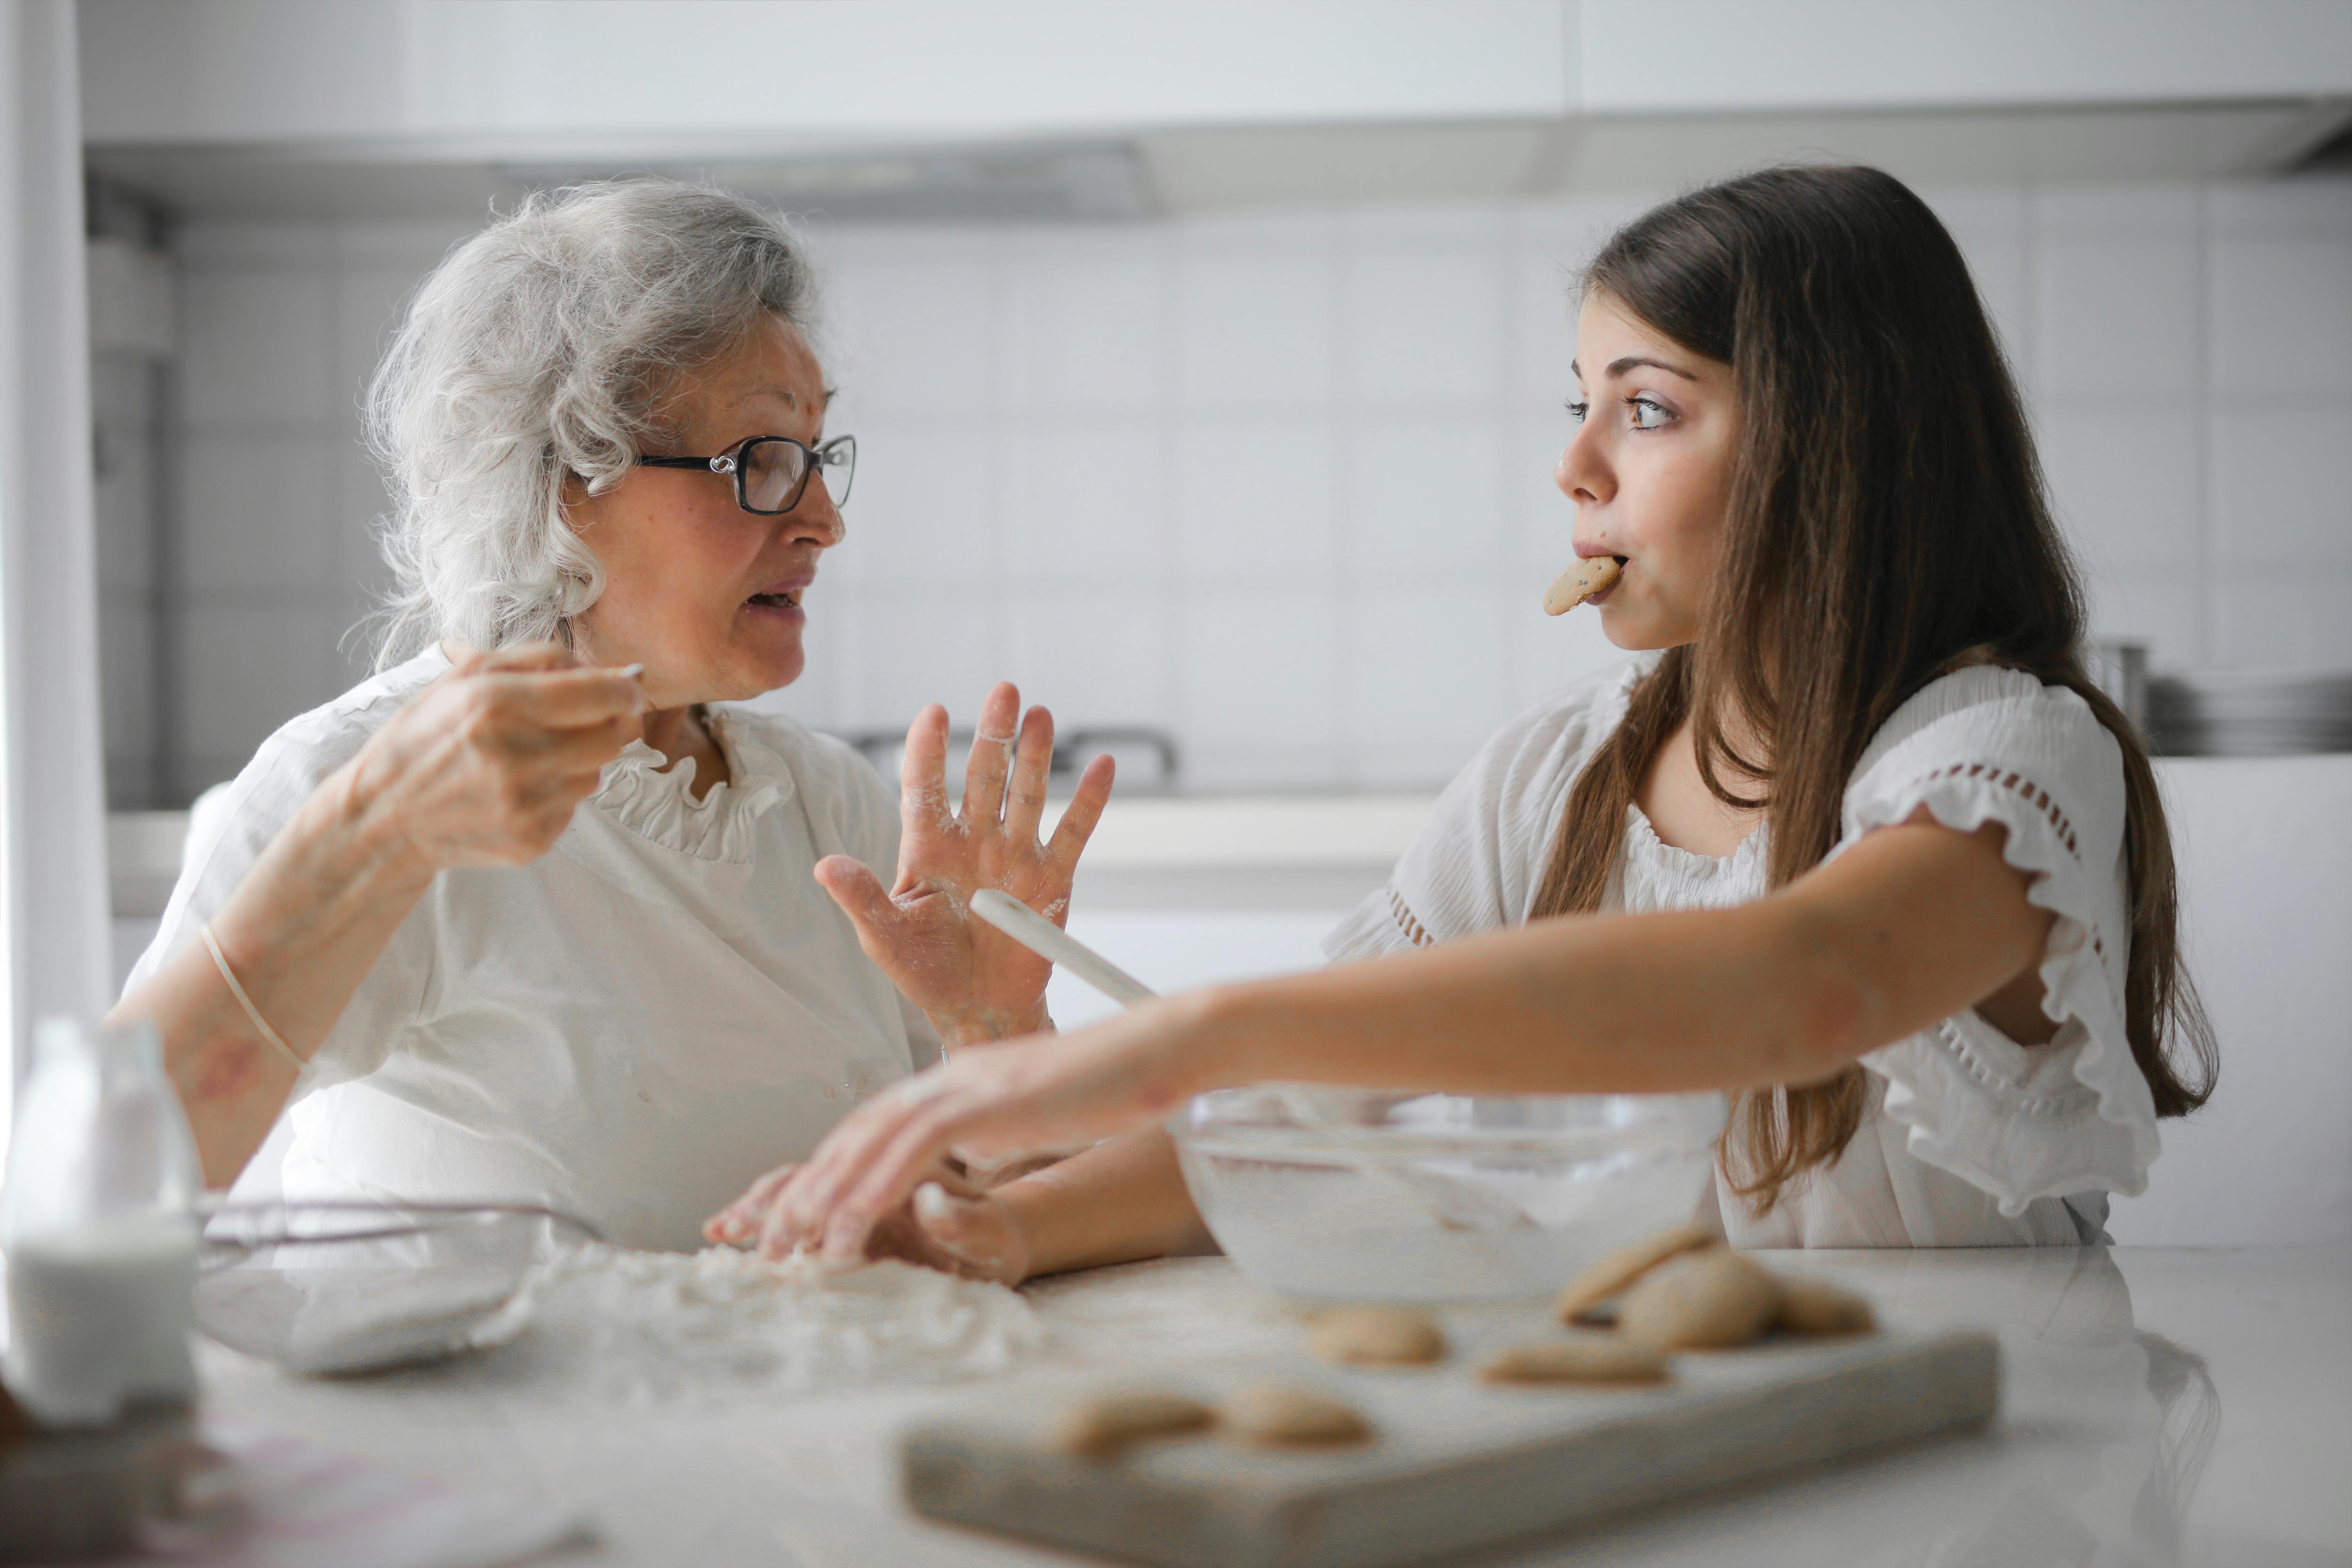 Nachdenkliche Großmutter und Enkelin im Gespräch in der Küche | Quelle: Pexels